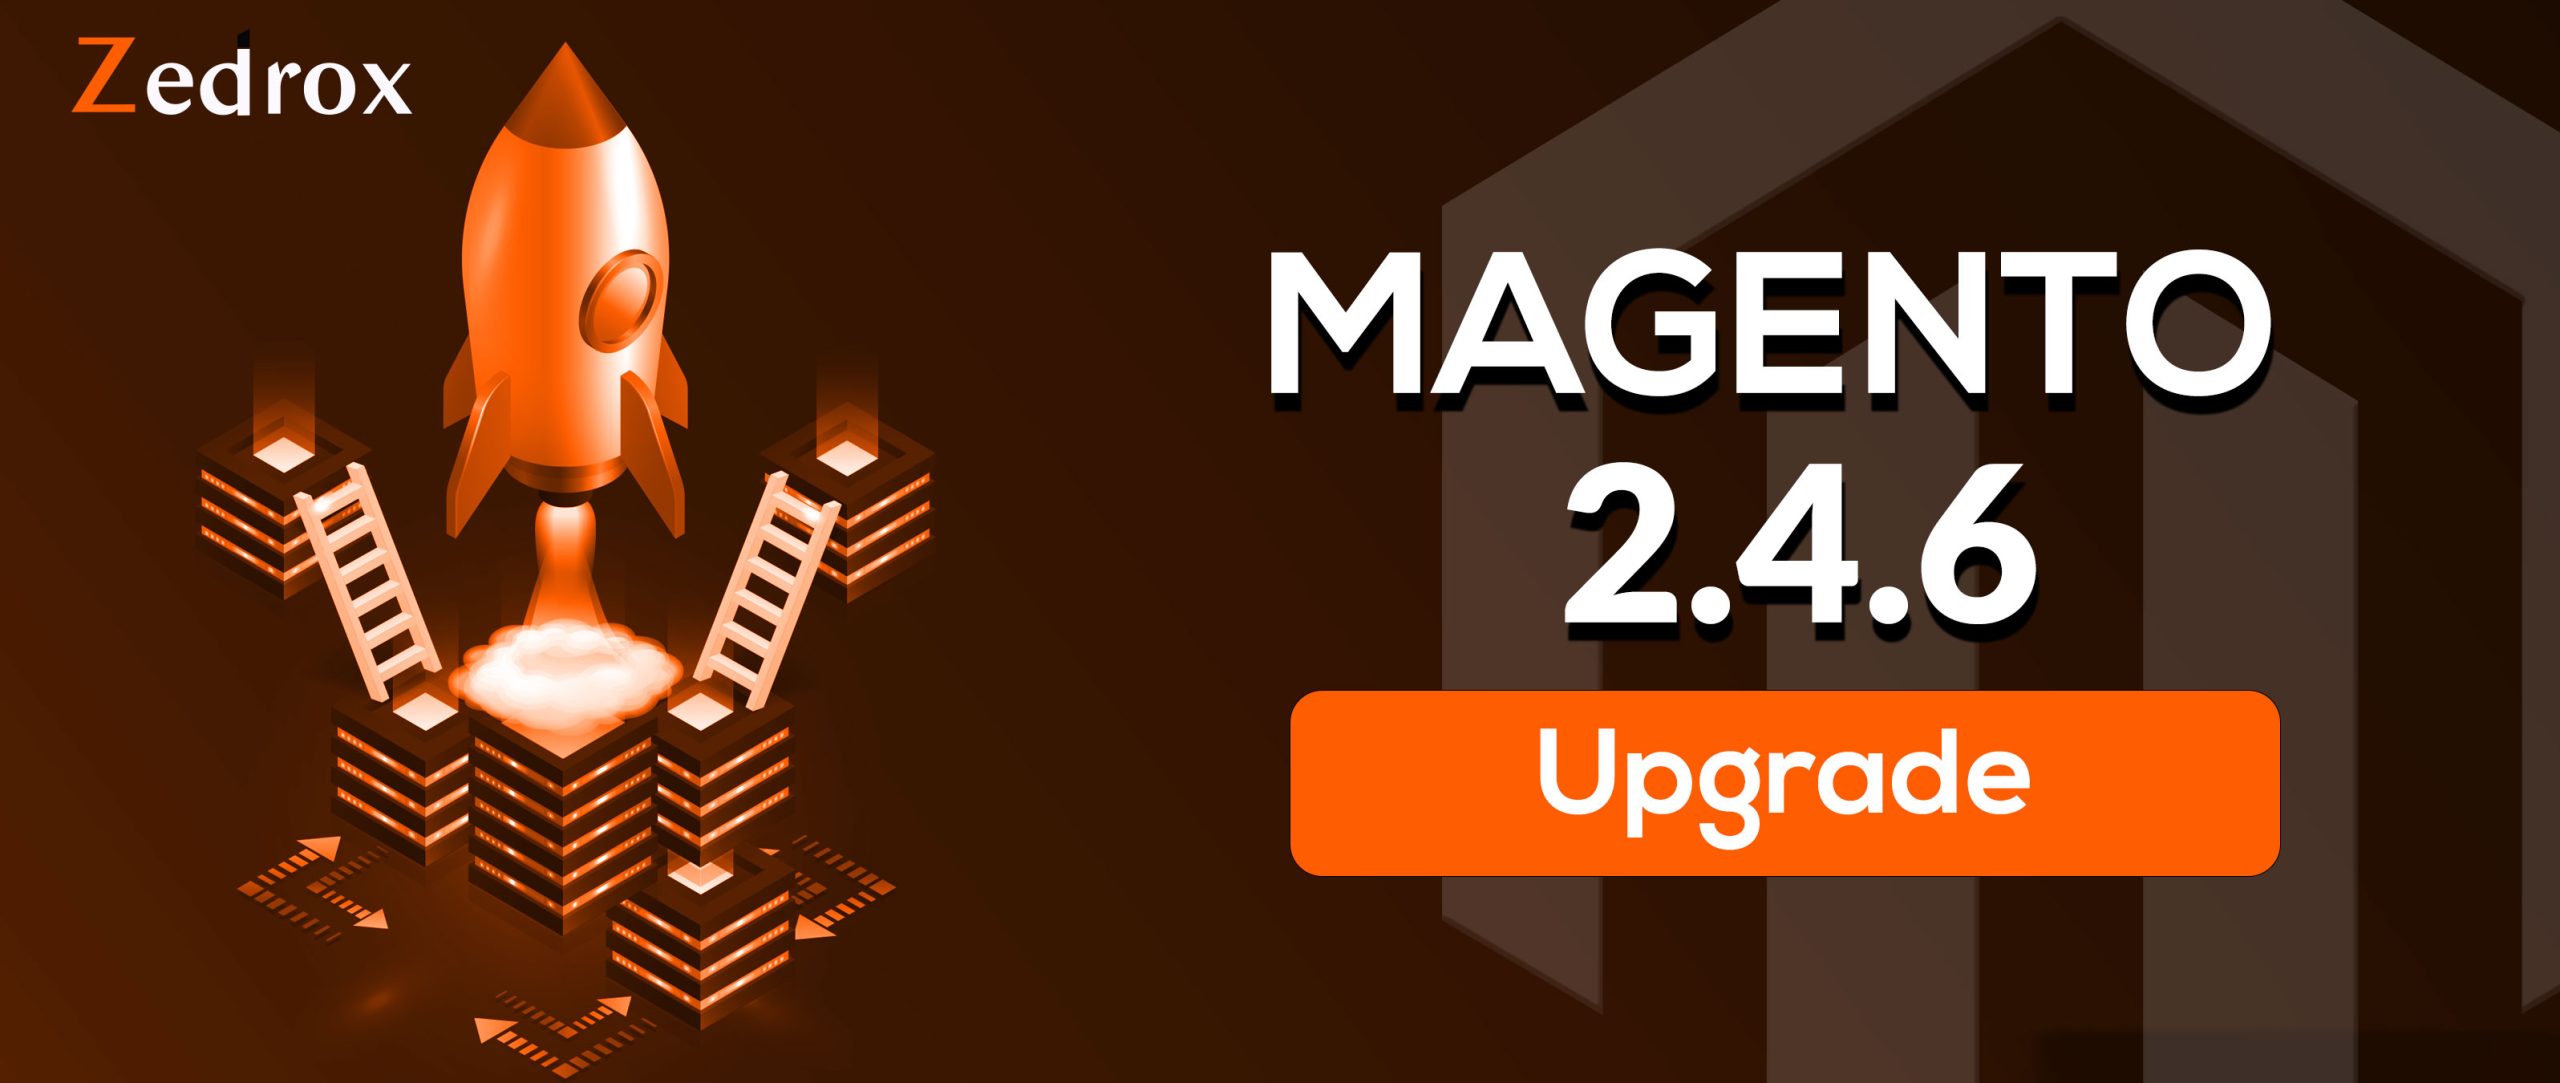 Alles wat u moet weten over de nieuwe Magento versie 2.4.6